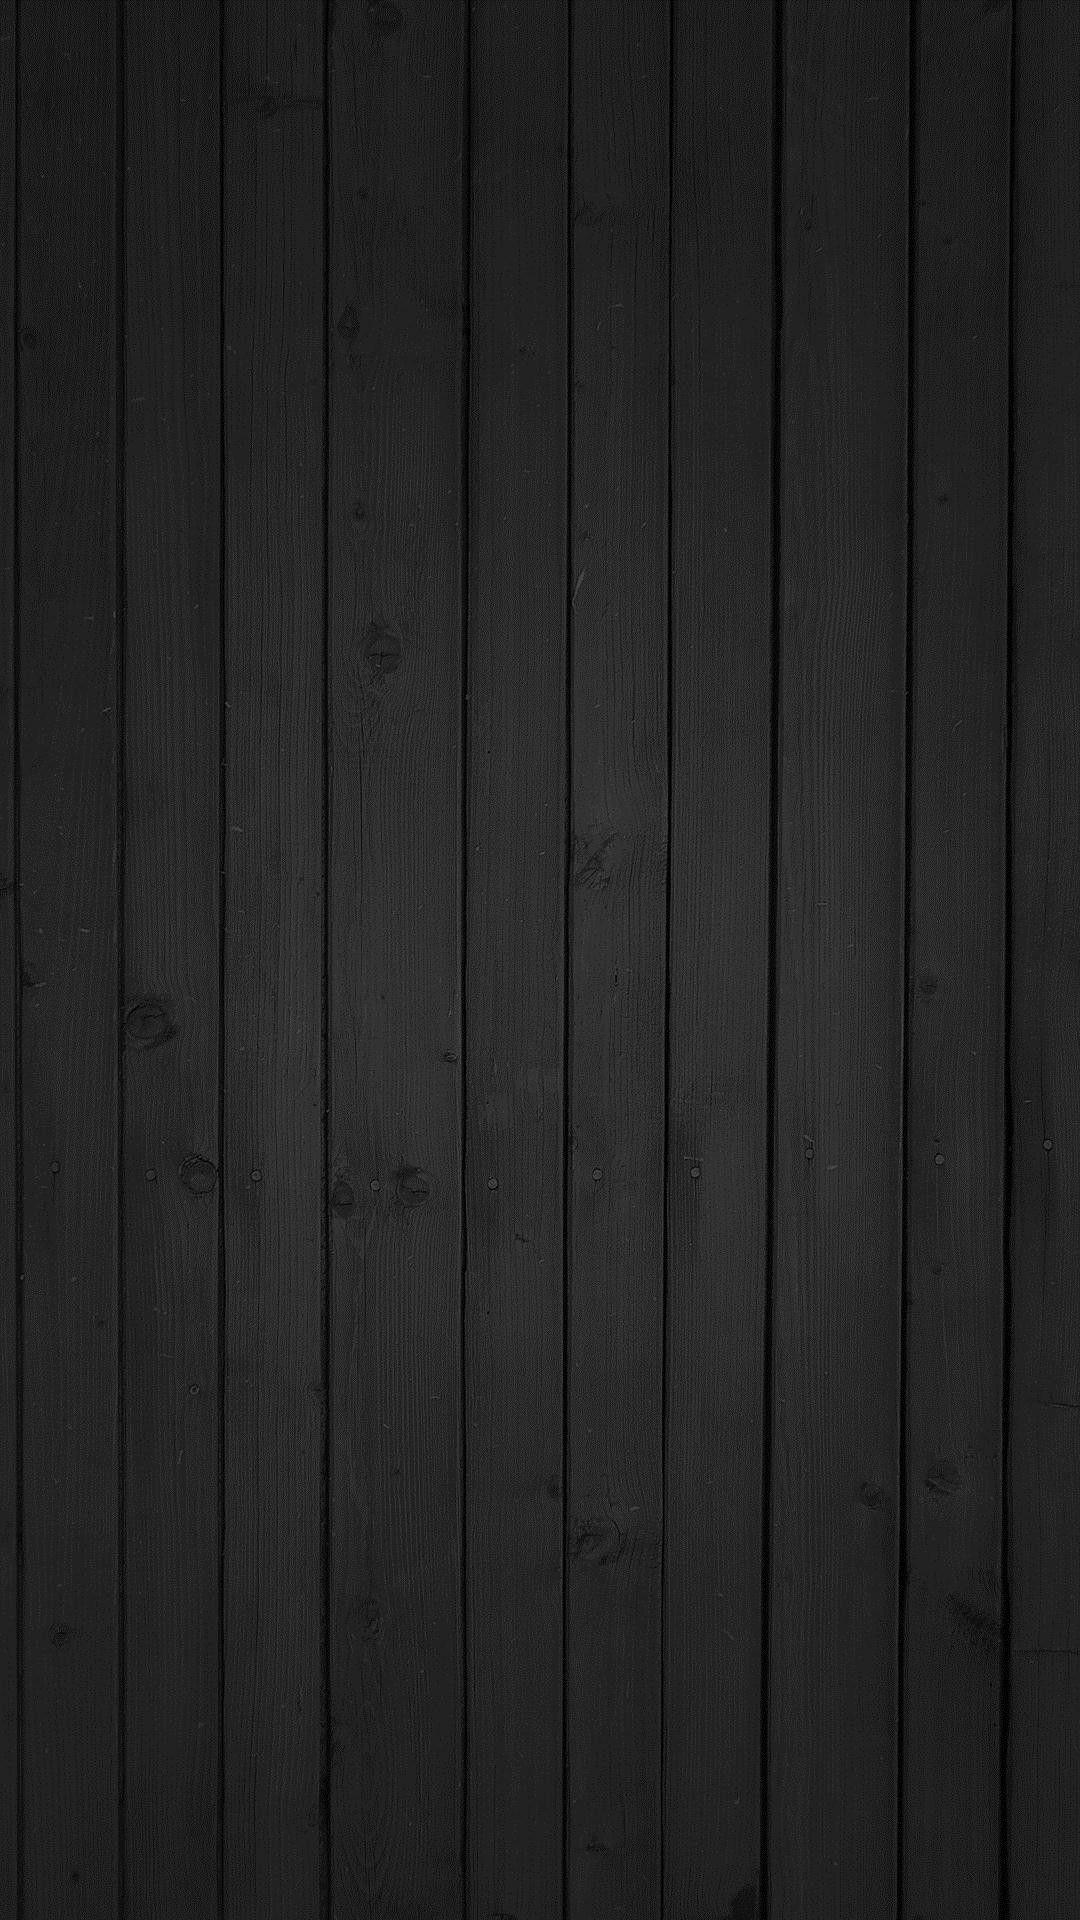 Hình nền gỗ đen: Hứa hẹn mang đến một không gian sống hiện đại và đầy phong cách, hình nền gỗ đen sẽ giúp tô điểm cho màn hình điện thoại hay máy tính bảng của bạn với nhiều lựa chọn đa dạng và phù hợp với sở thích cá nhân của mỗi người.